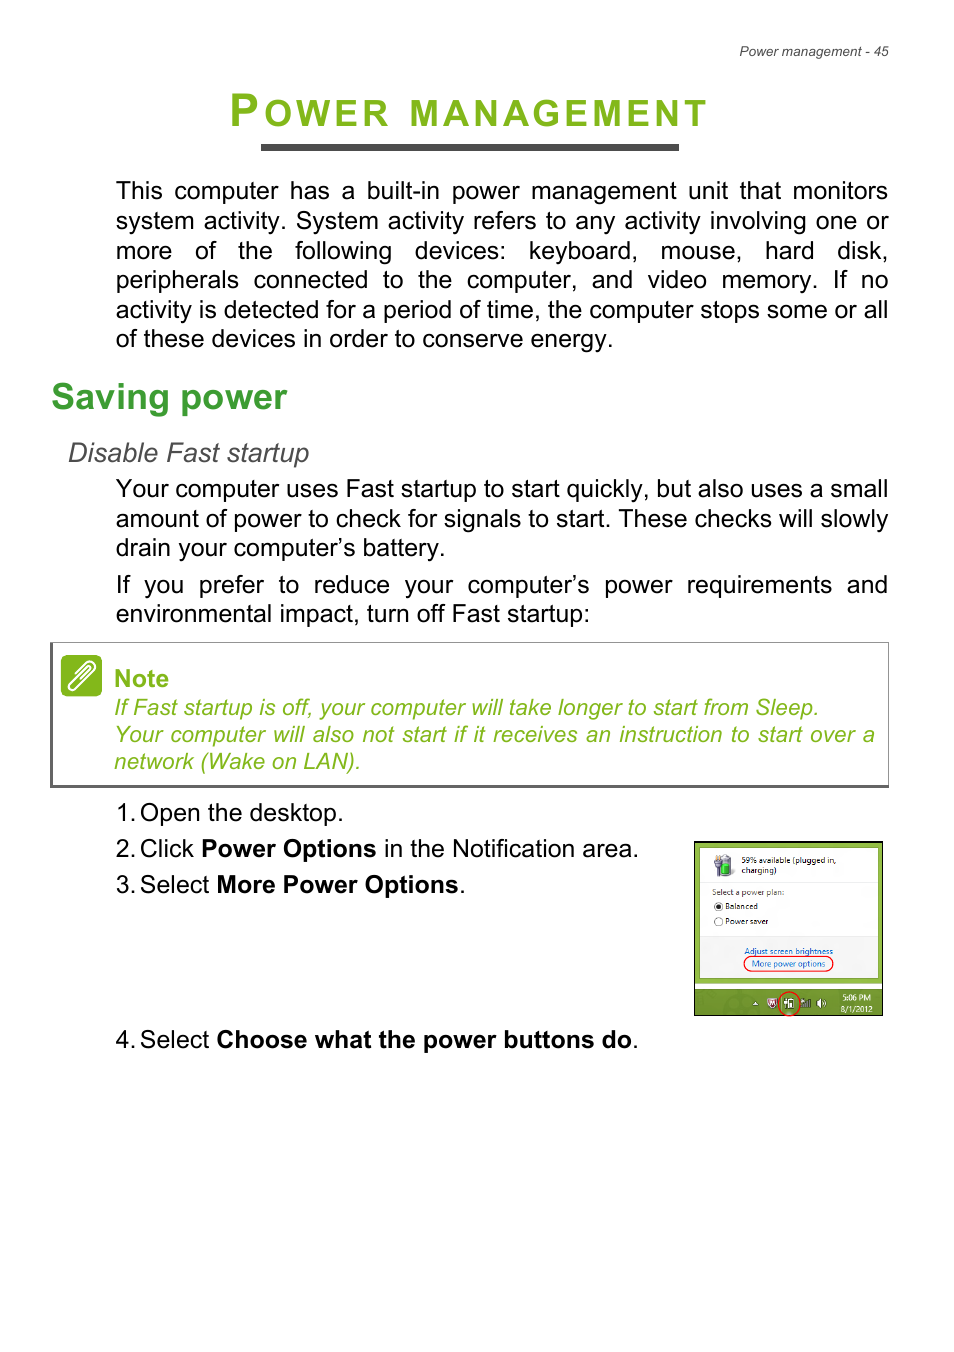 Power management, Saving power, Ower | Acer Aspire V3-772G User Manual |  Page 45 / 87 | Original mode